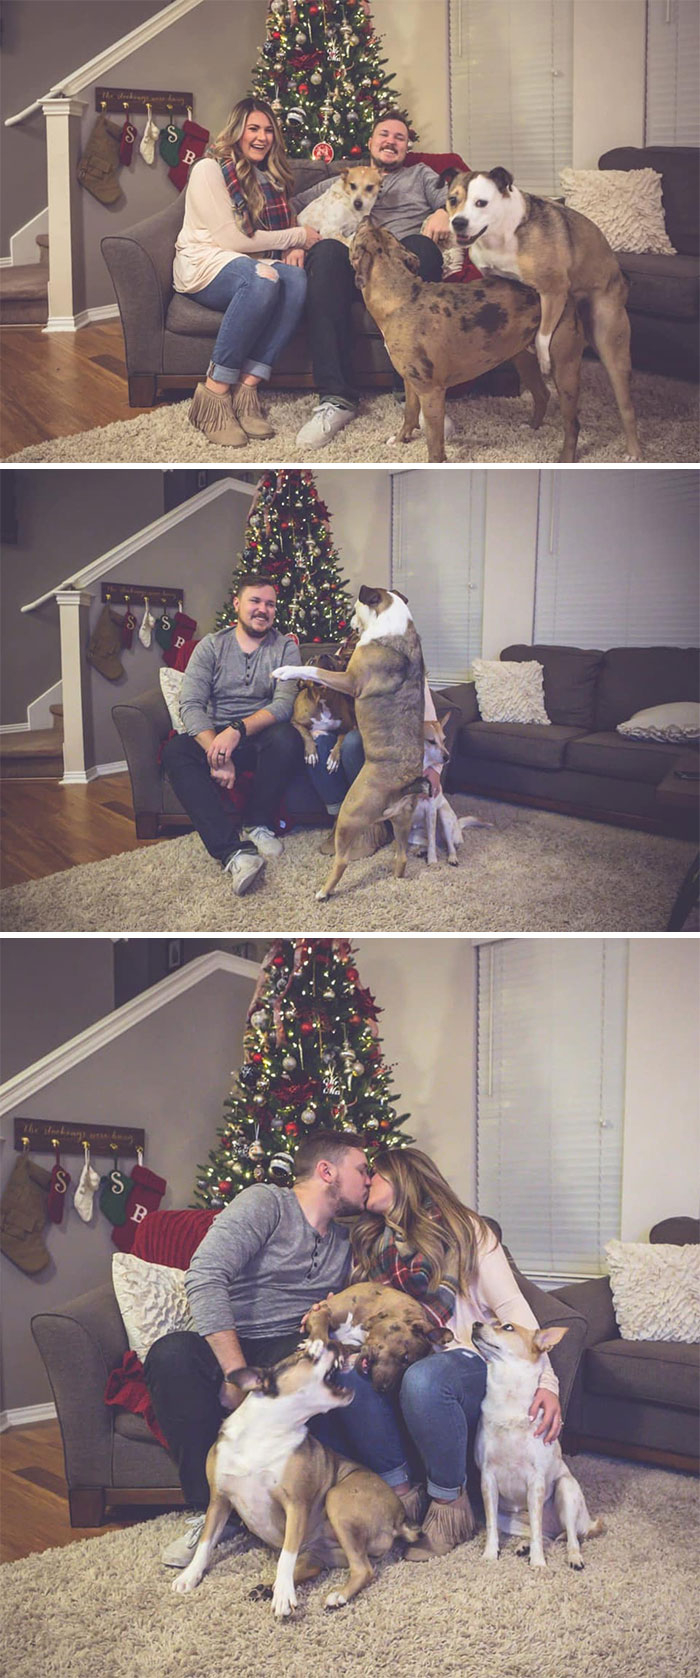 Галерея дурацких рождественских фотографий, которые испортили собаки | Канобу - Изображение 7307